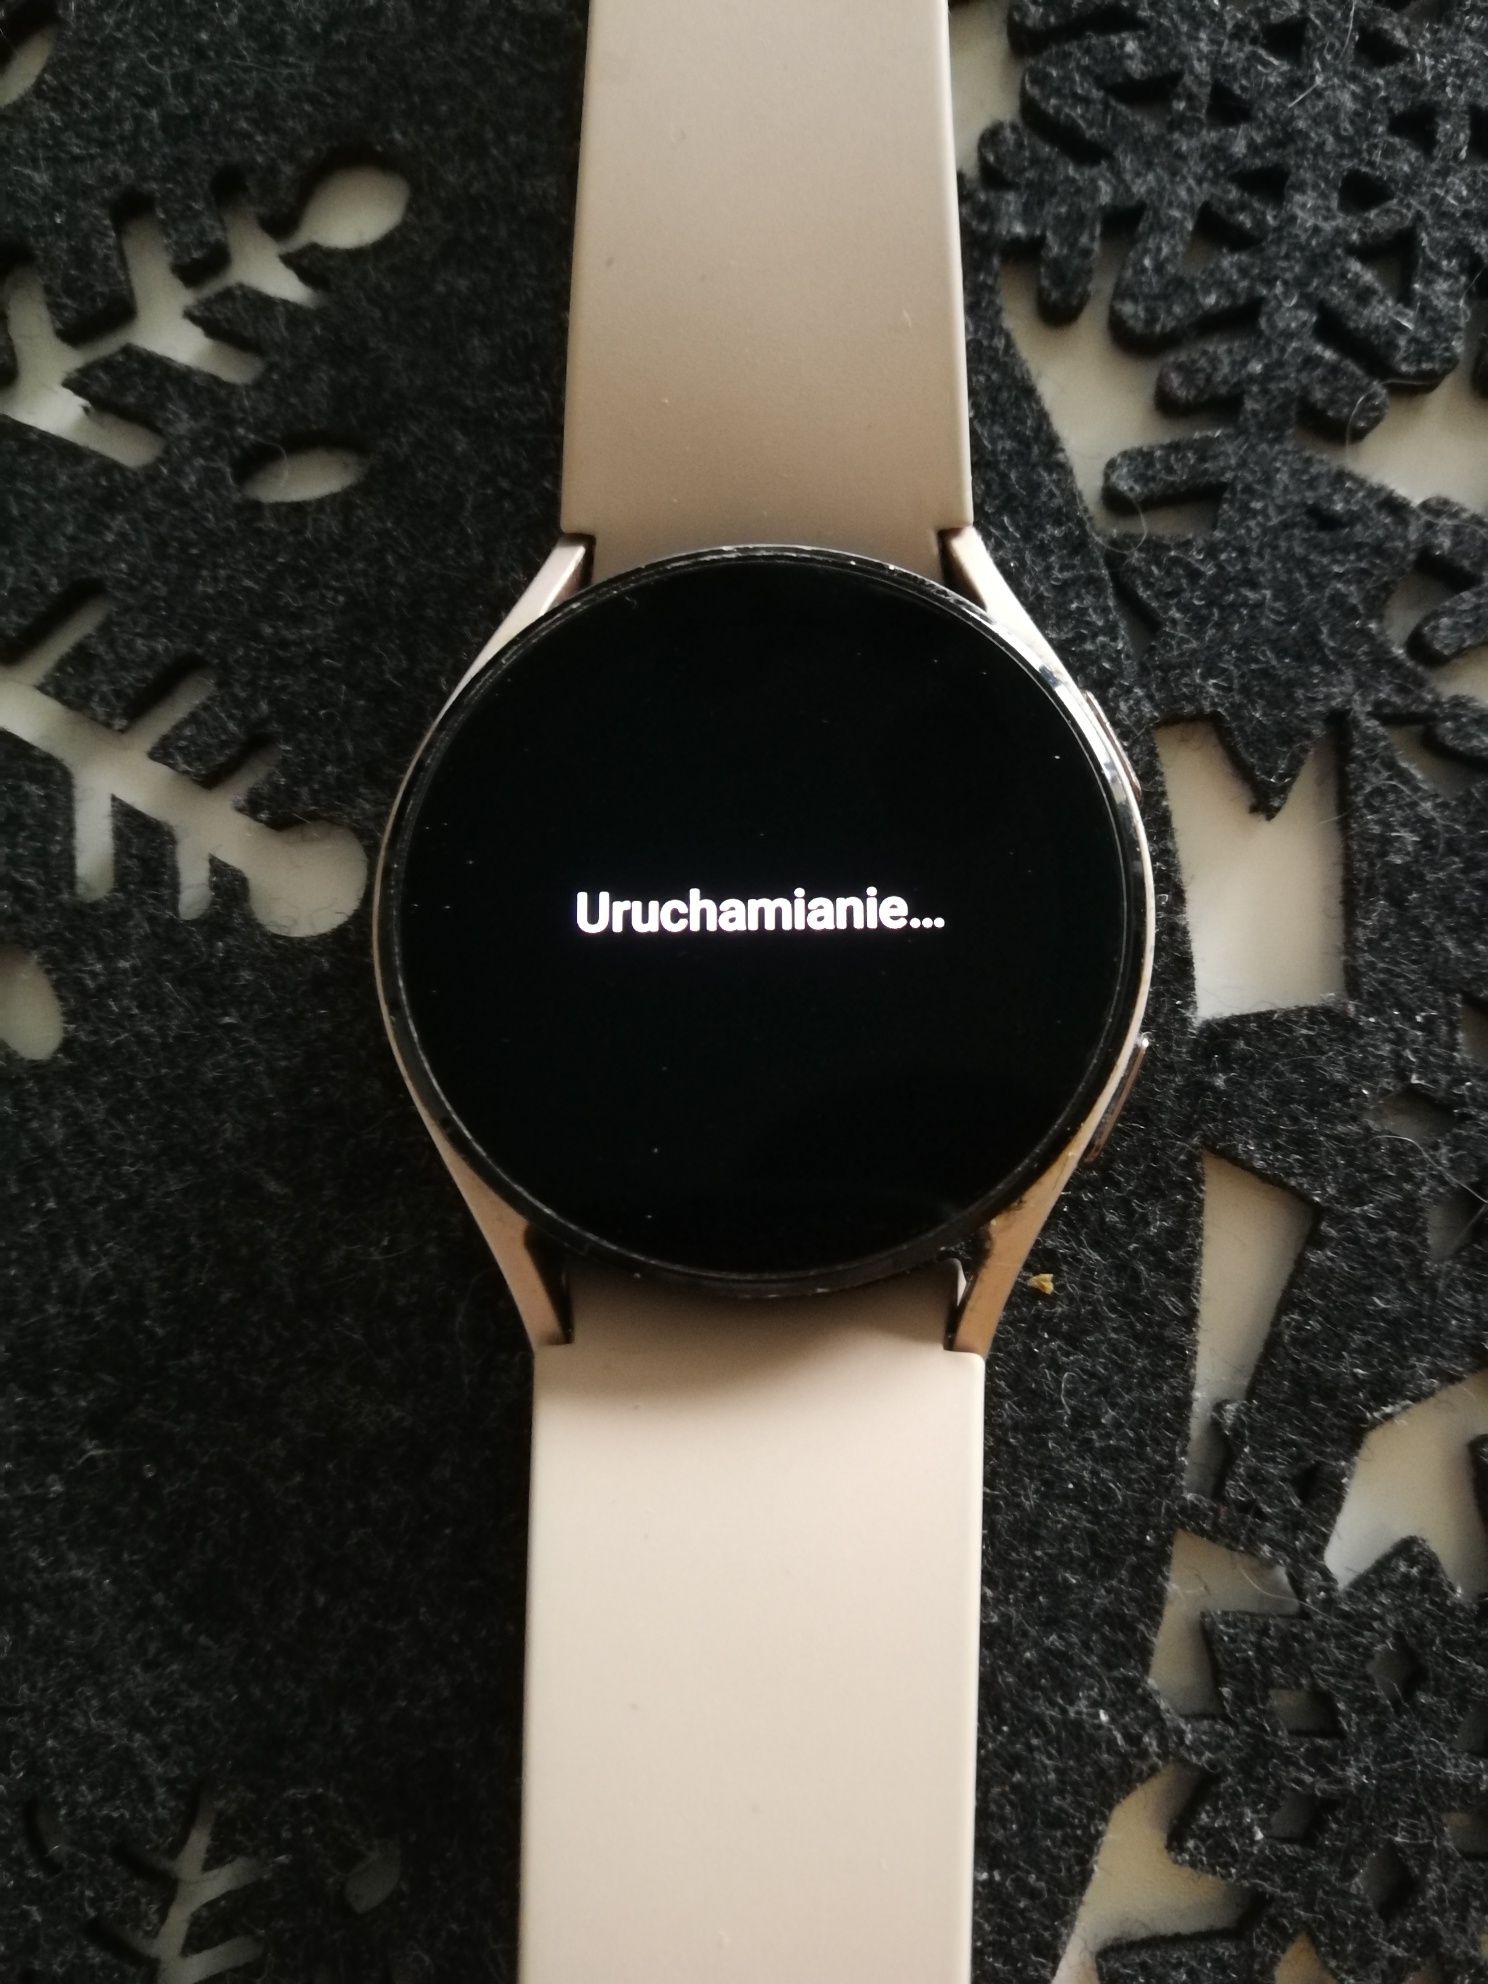 Smartwatch Samsung Galaxy Watch4 40mm GPS Różowe złoto